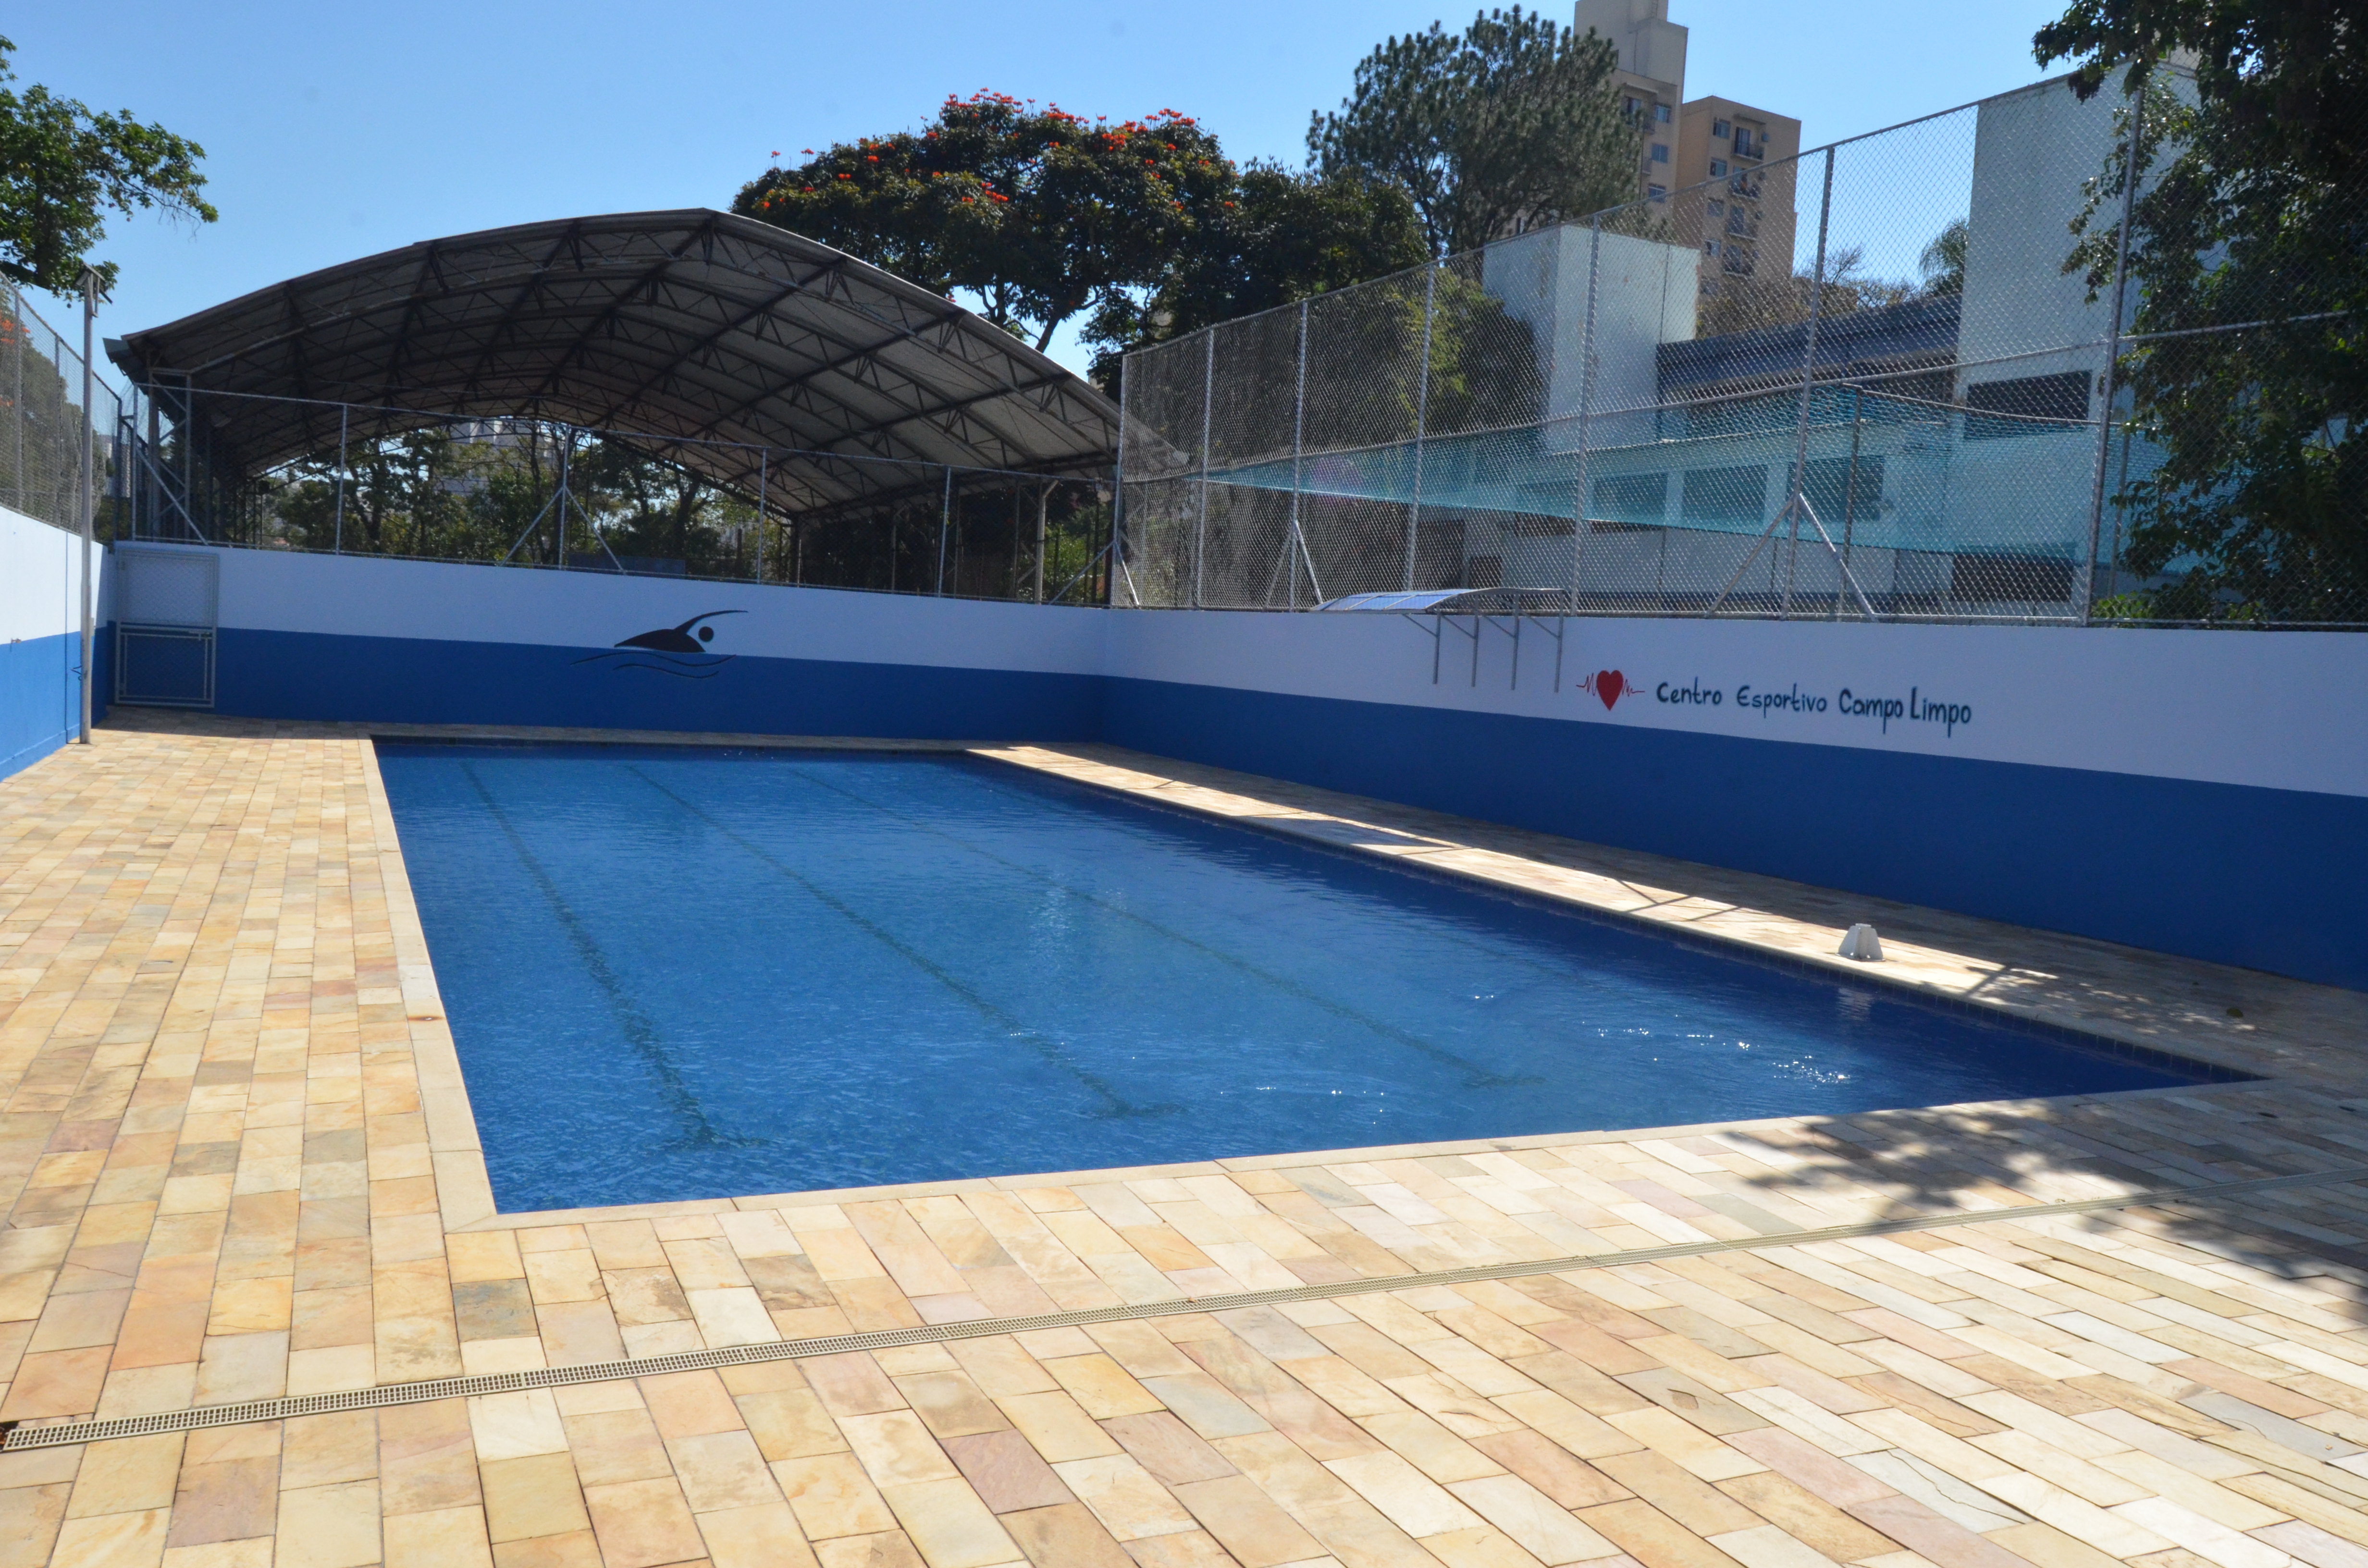 Na imagem, a piscina reformada do Centro Esportivo Campo Limpo.